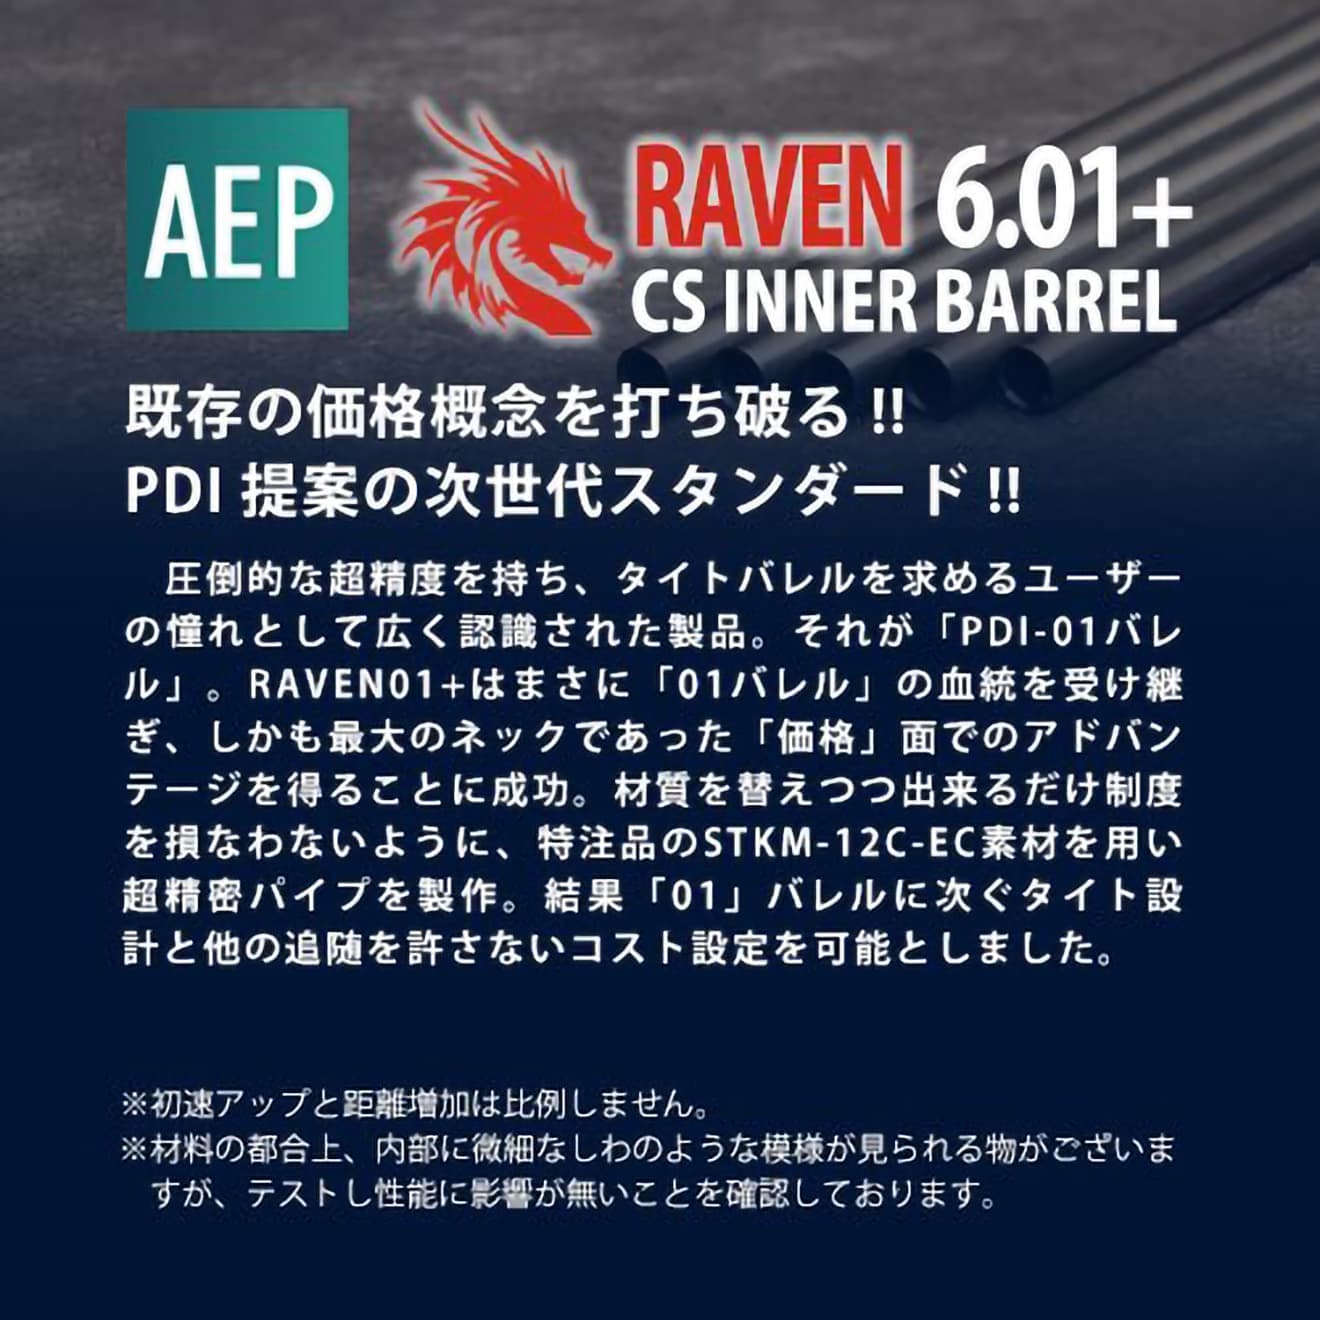 PDI RAVENシリーズ 01+ AEP 特殊形状 精密インナーバレル(6.01±0.007)  [長さ：112mm / 115mm / 122mm]